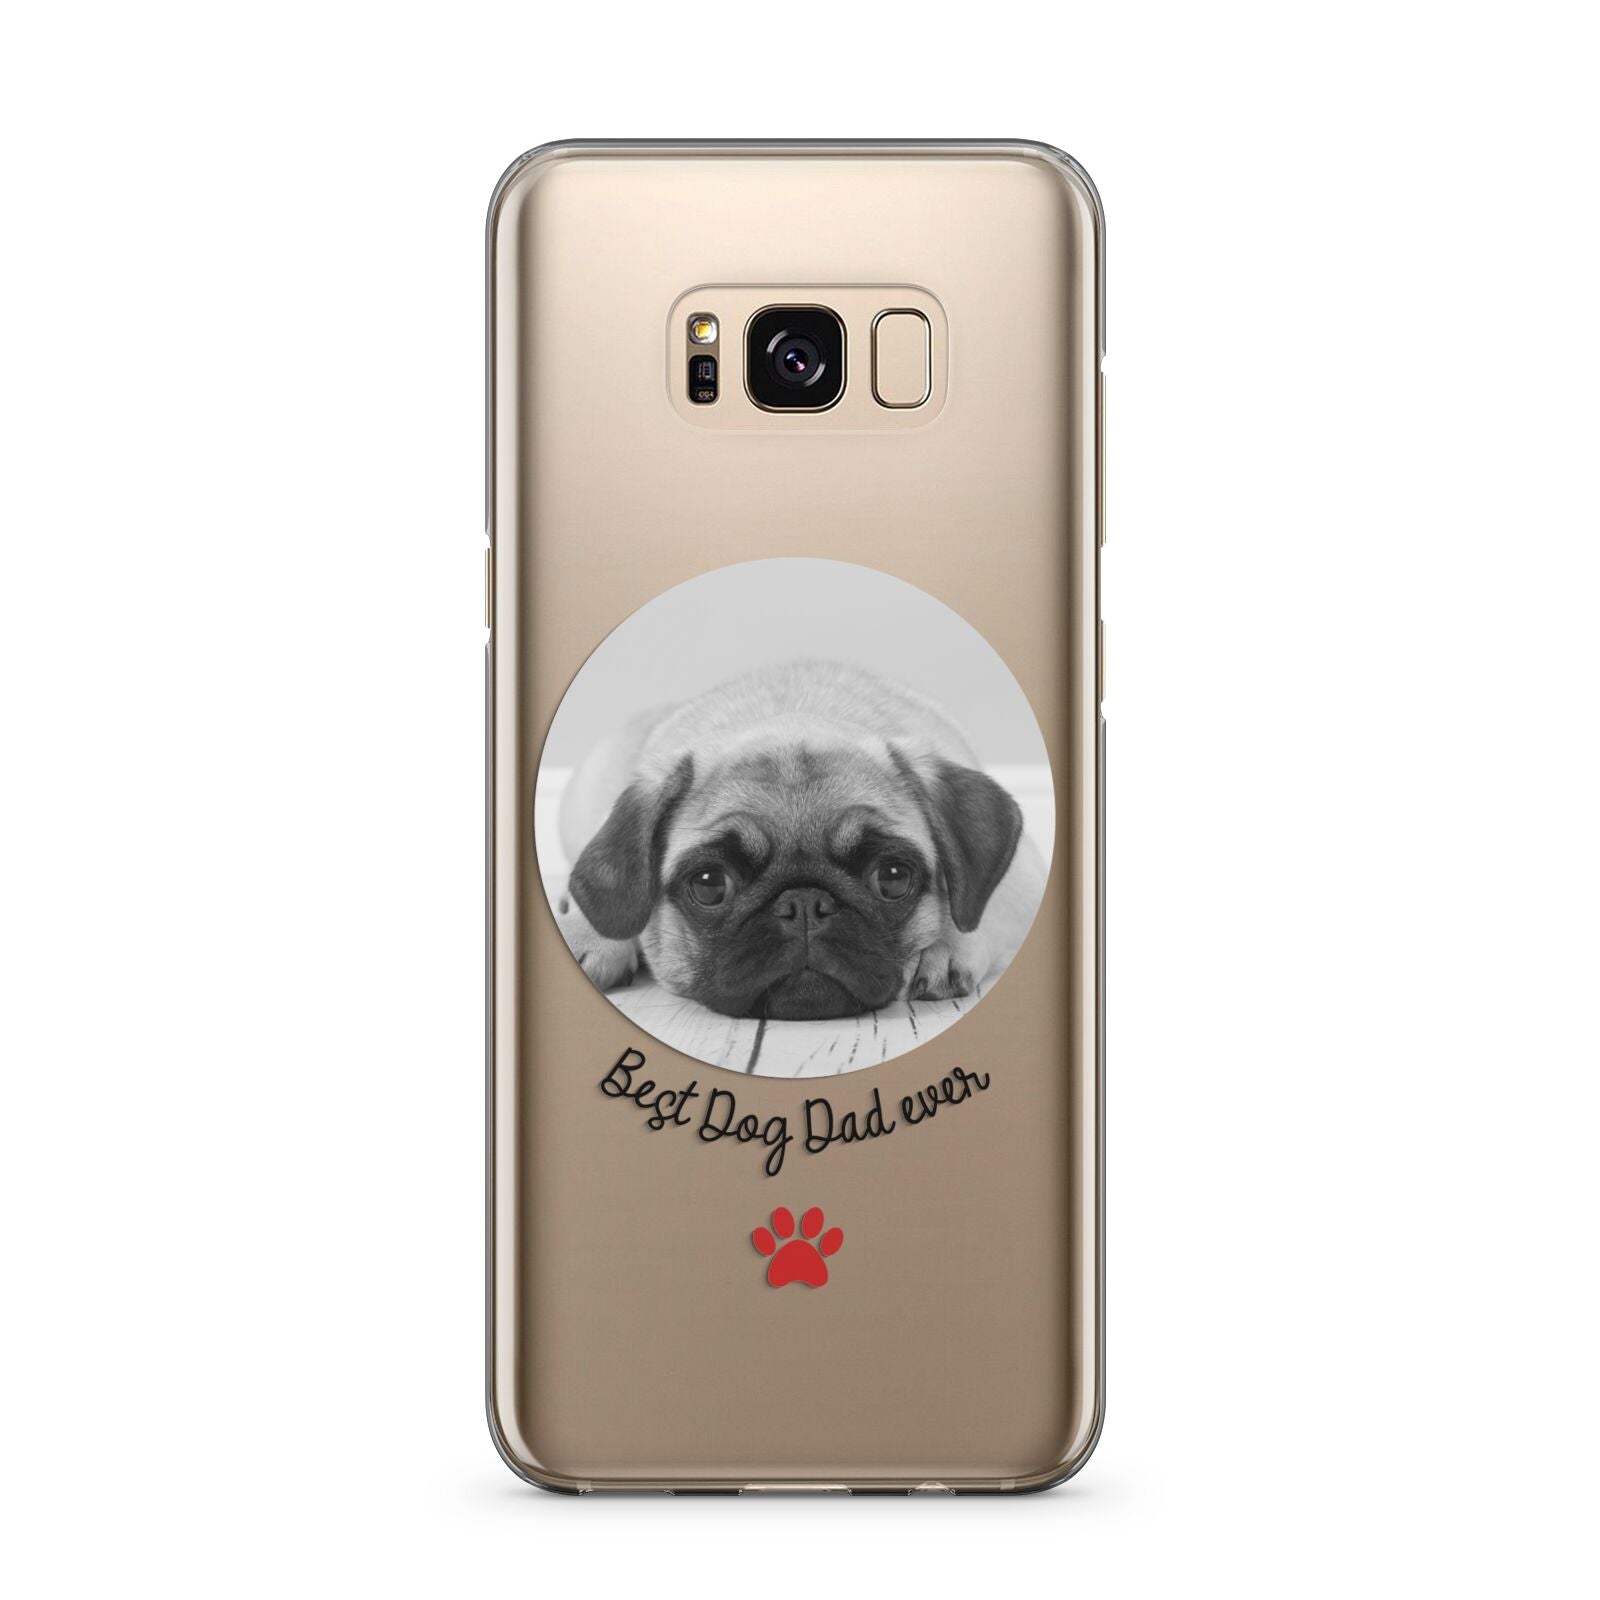 Best Dog Dad Ever Photo Upload Samsung Galaxy S8 Plus Case